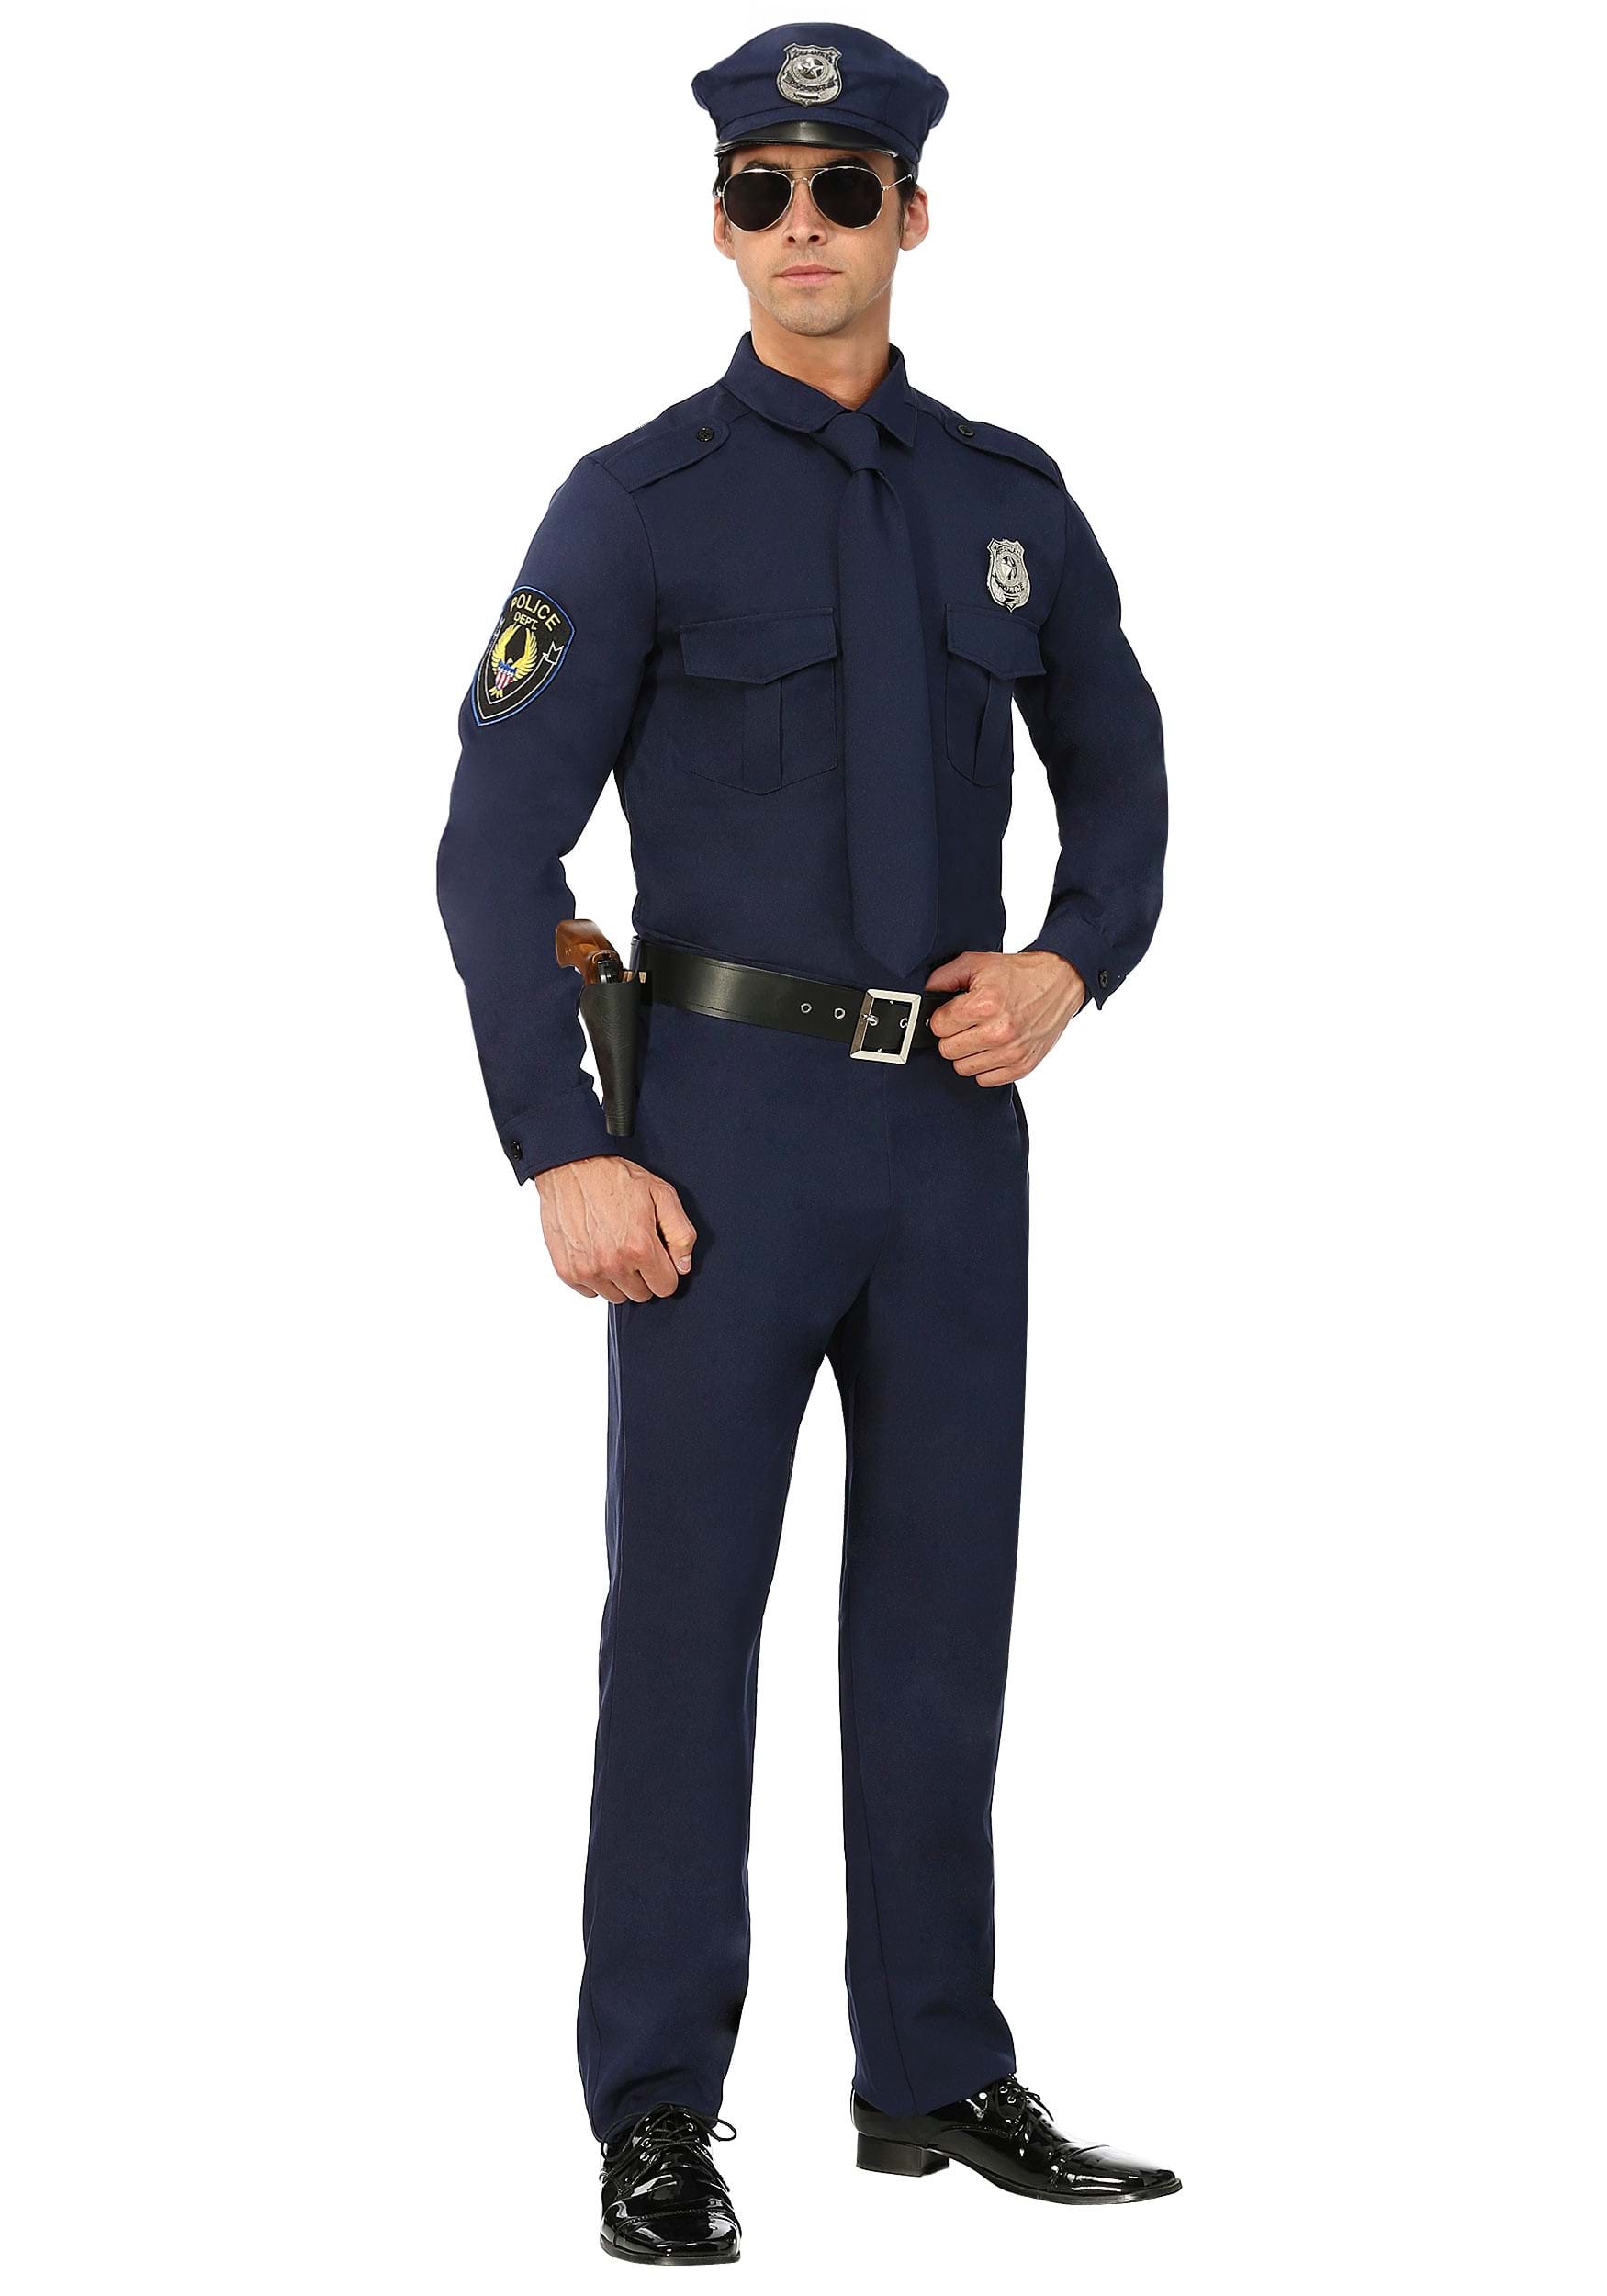 Men’s Cop Costume